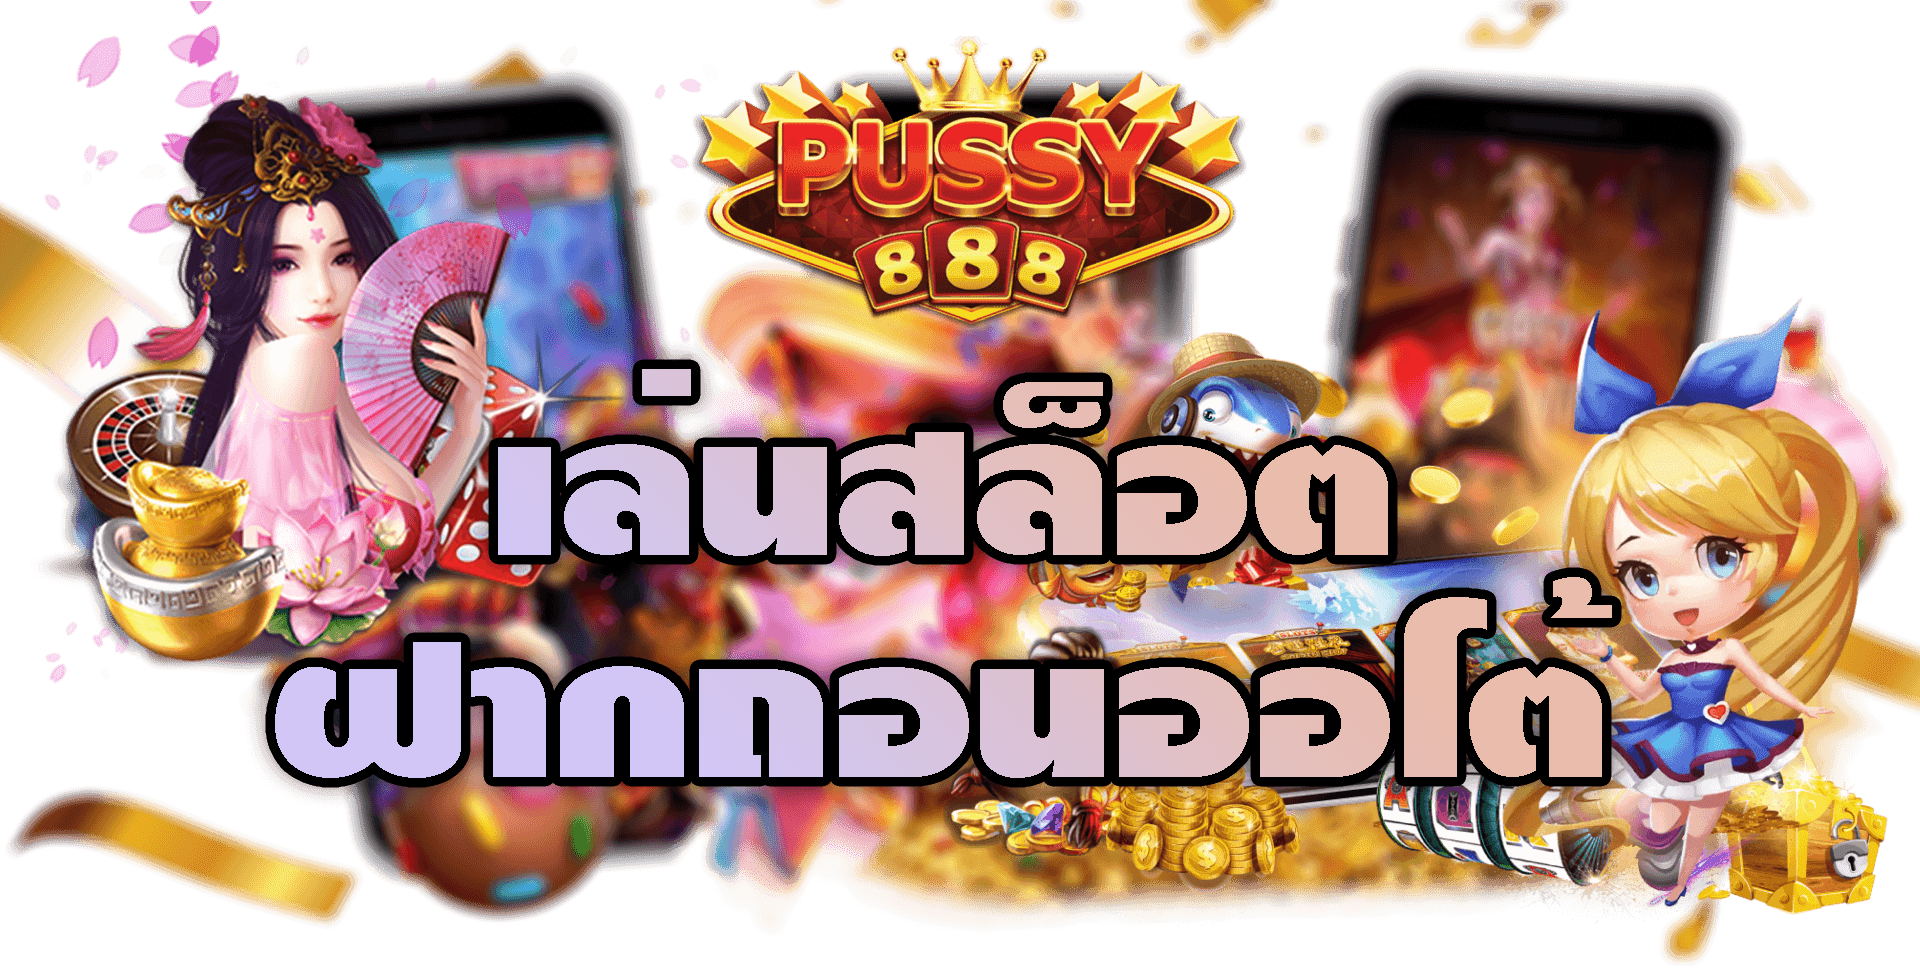 Pussy888-2022-เล่นสล็อตฝากถอนออโต้